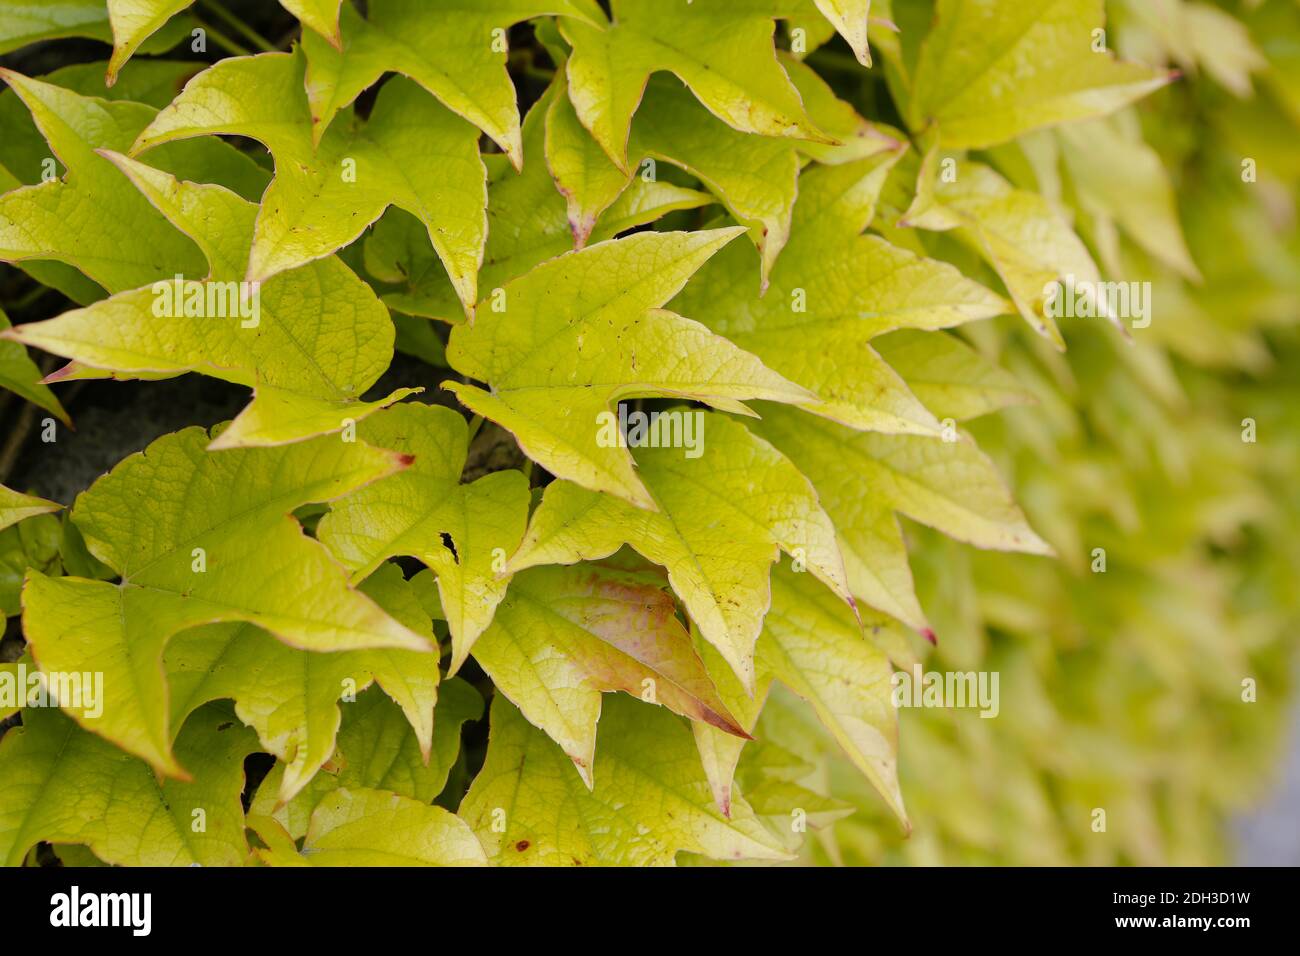 Vino salvaje, Parthenocissus tricuspidata, Foto de stock